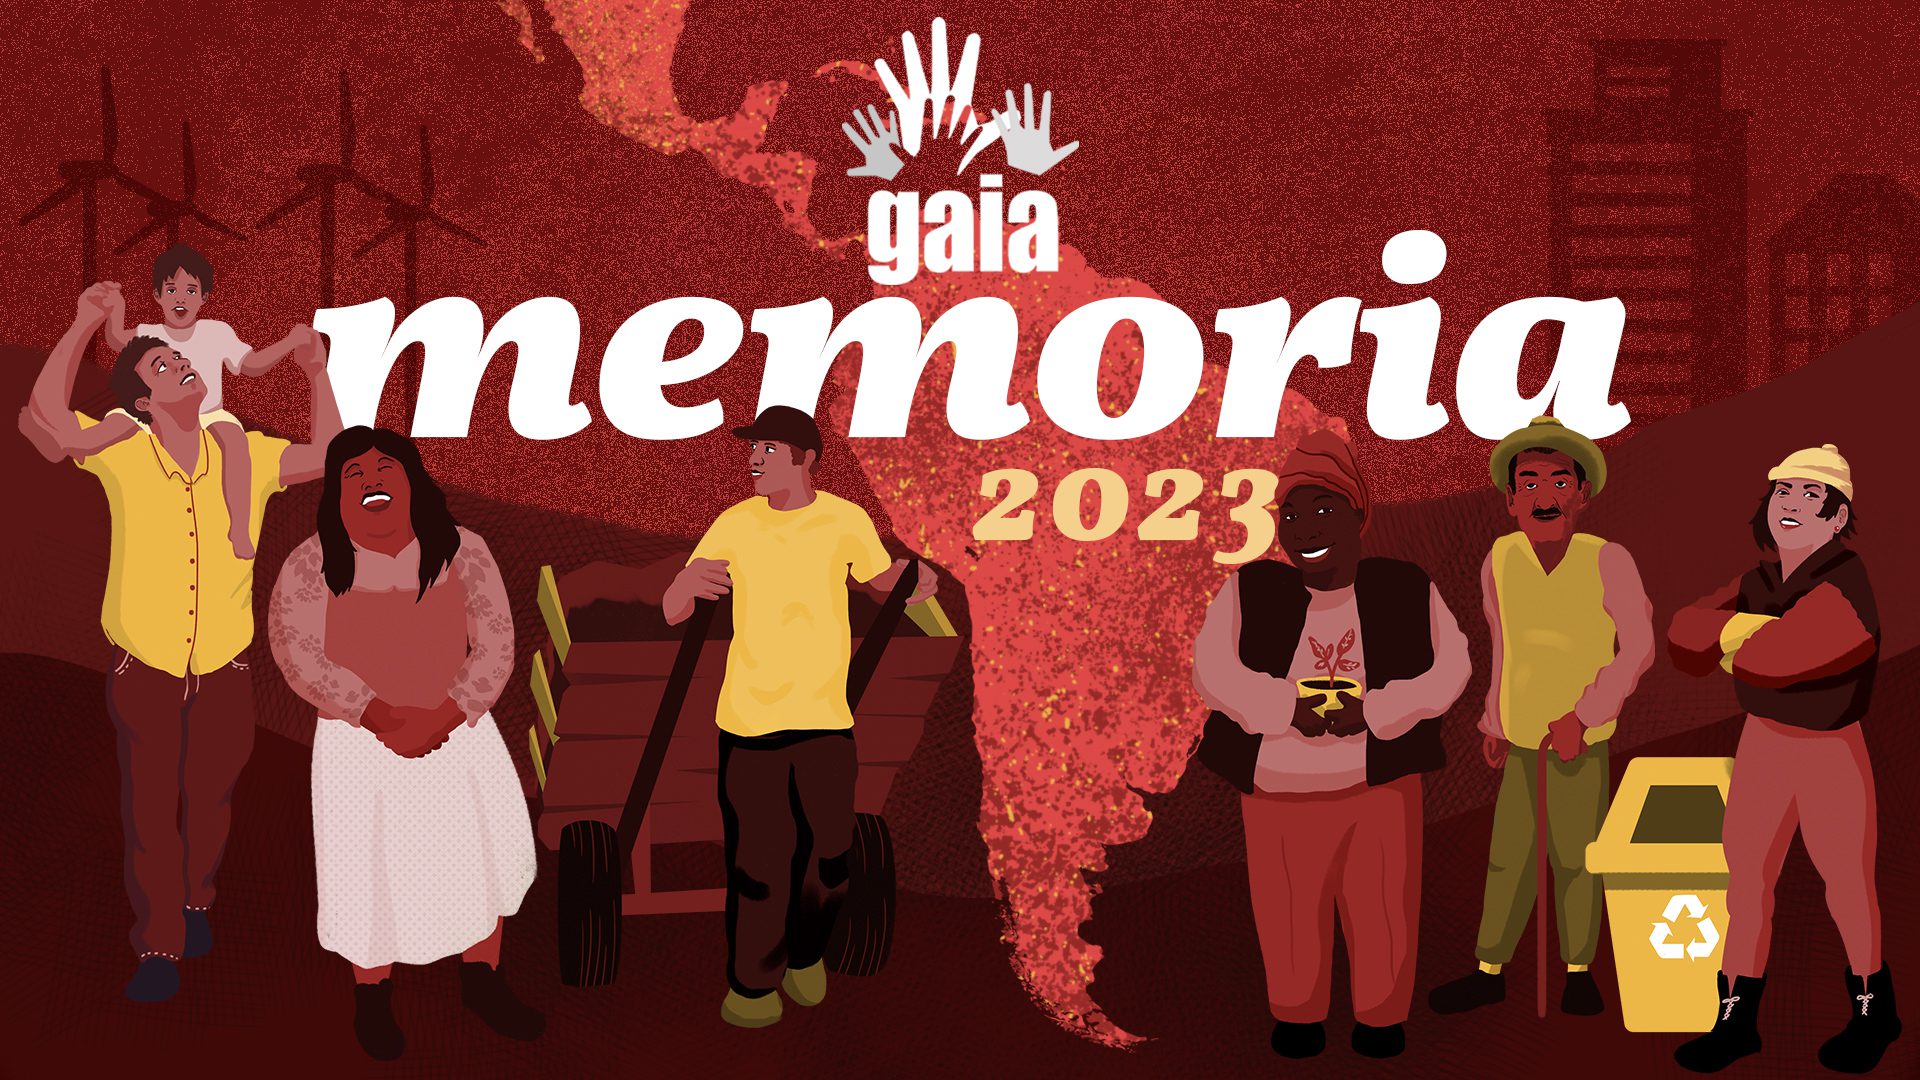 Portada memoria GAIA 2023. Fondo rojo con un mapa de América Latina y 6 personajes ilustrados que representan a los miembros de GAIA.